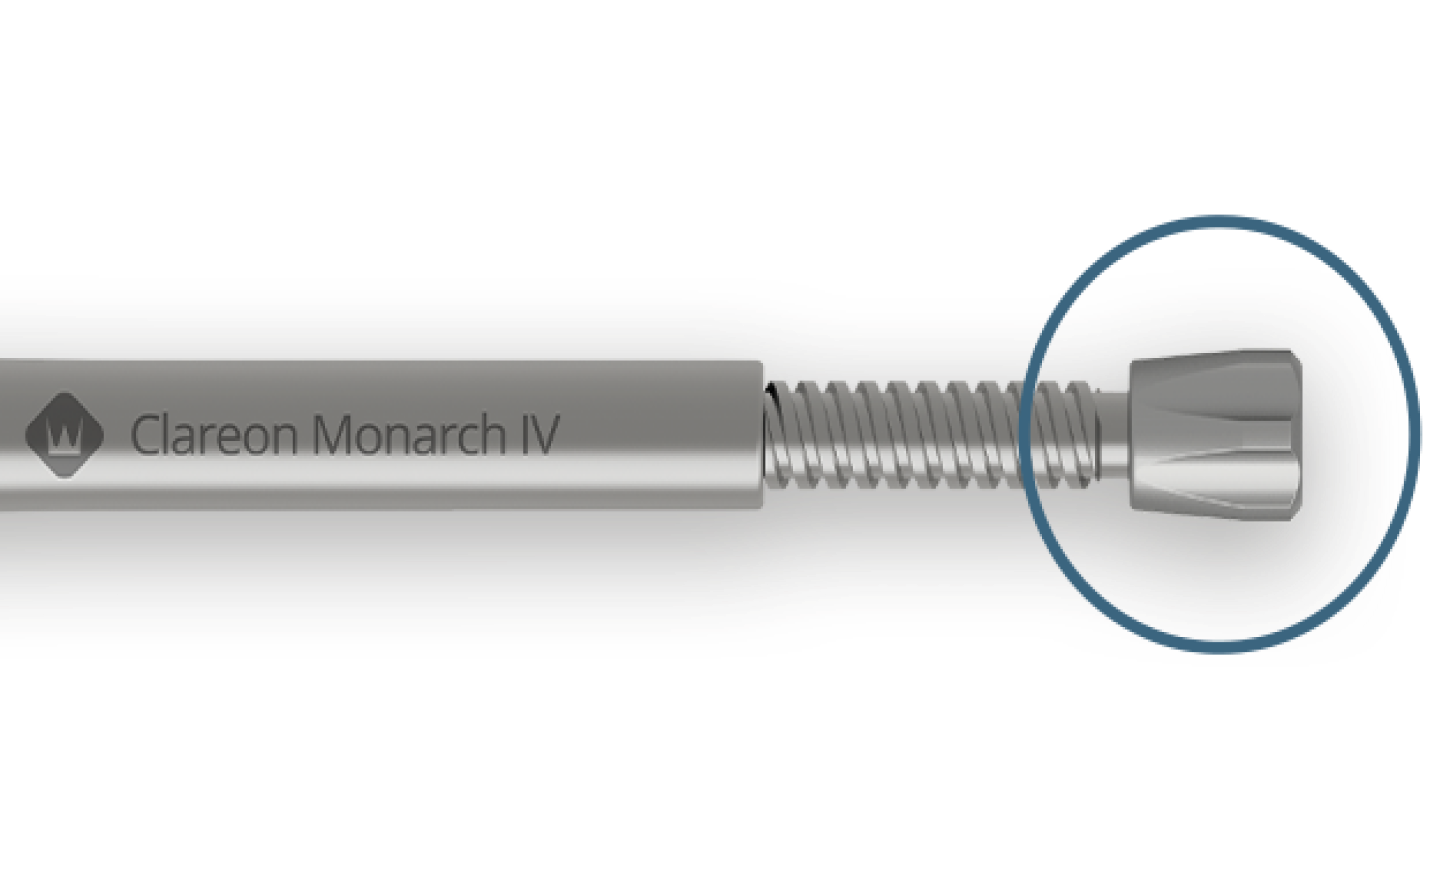 Clareon Monarch IV liegt horizontal. Ein blauer Kreis zieht die Aufmerksamkeit auf den Führknopf.